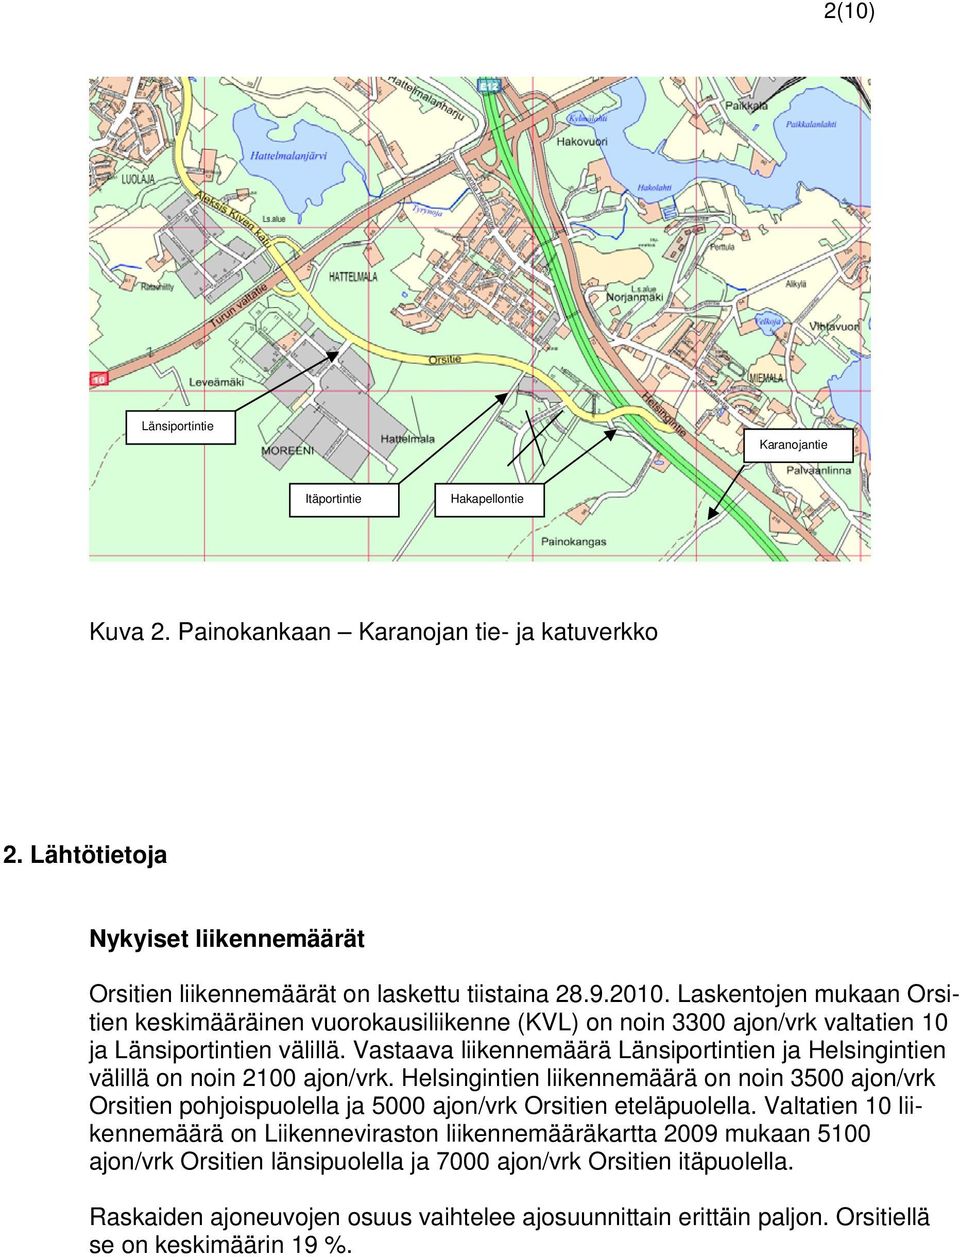 Vastaava liikennemäärä Länsiportintien ja Helsingintien välillä on noin 2100 ajon/vrk.